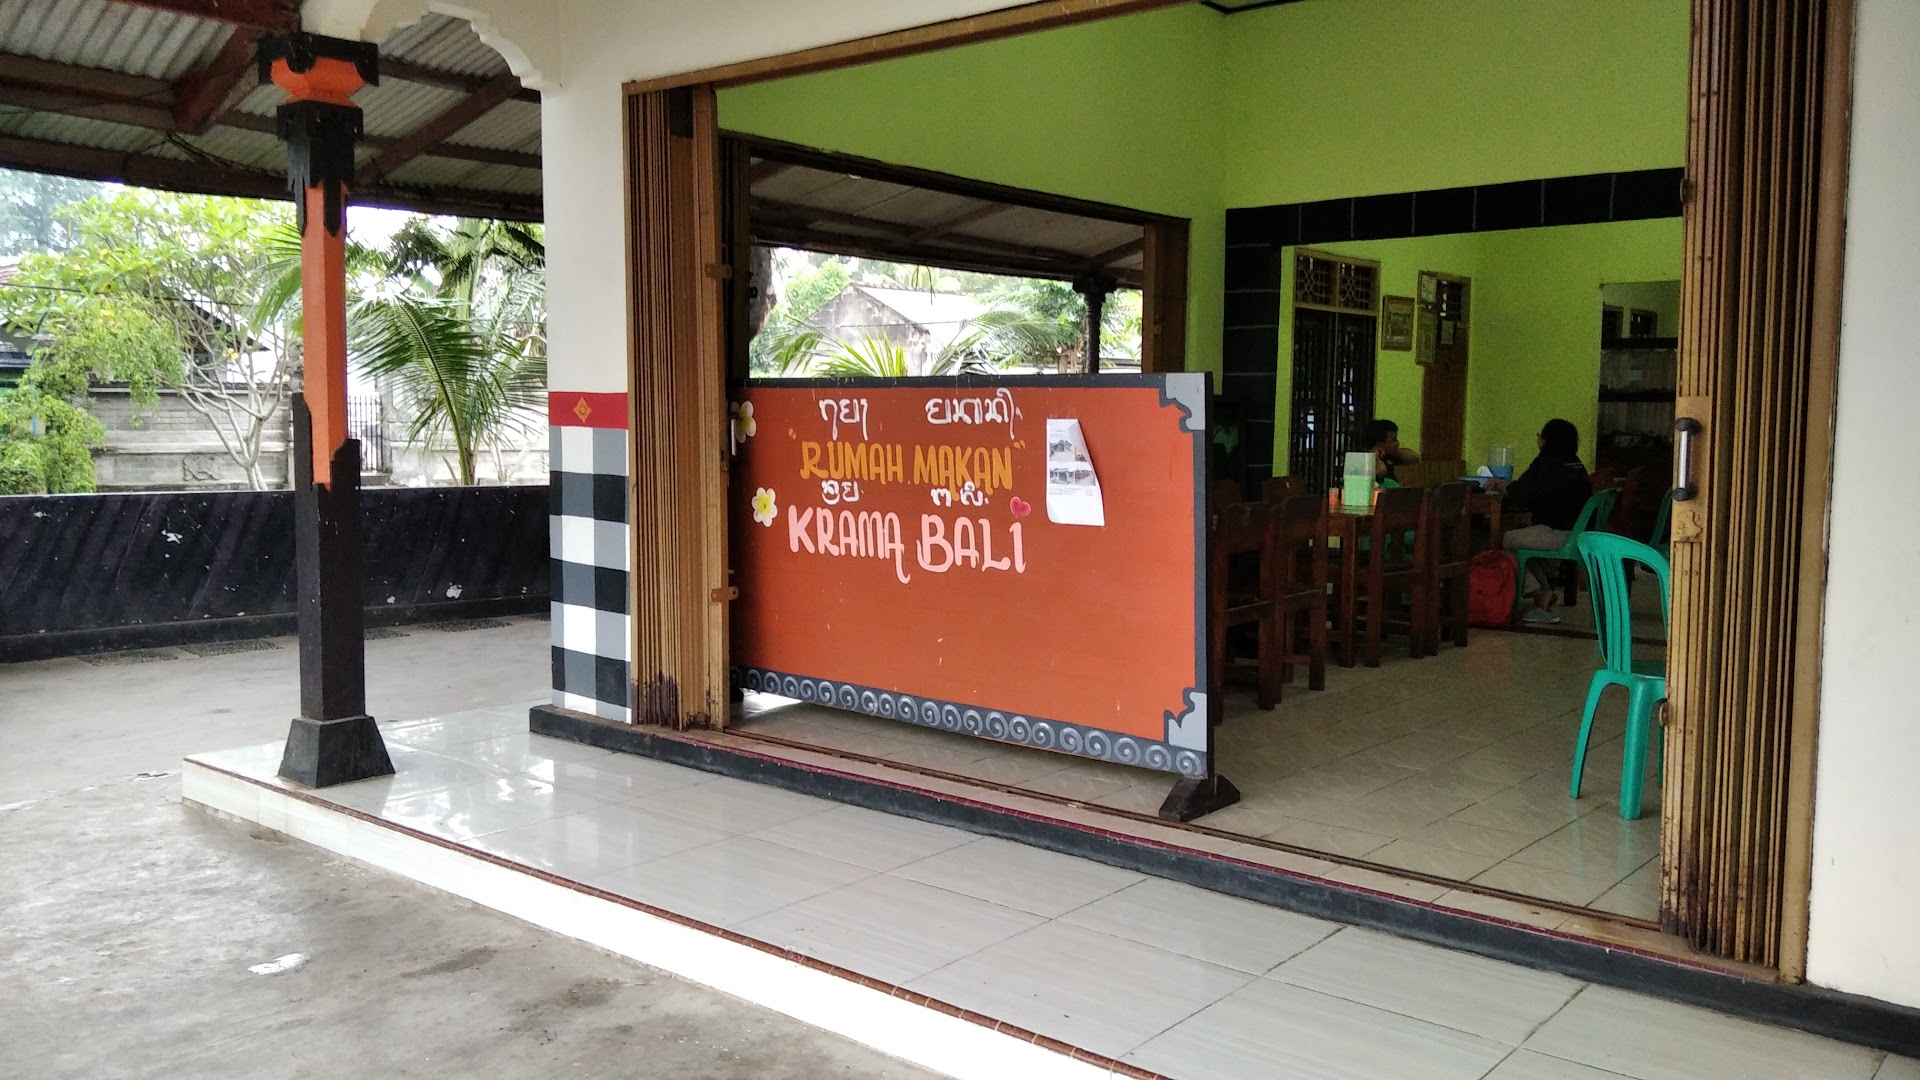 Gambar Wr. Krama Bali